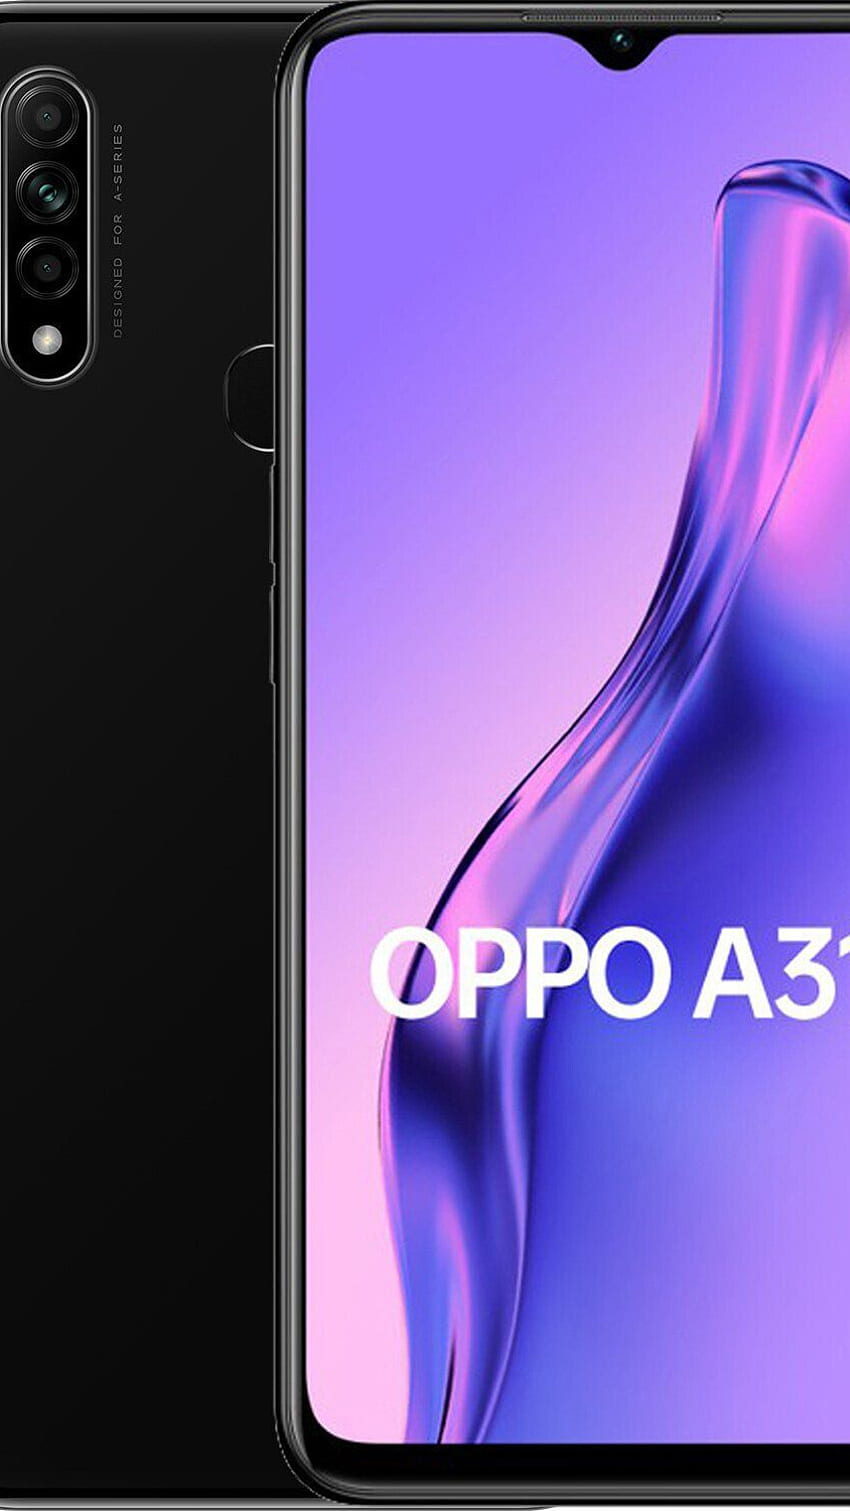 Khám phá hình nền HD độc đáo và đẹp mắt nhất cho điện thoại Oppo A